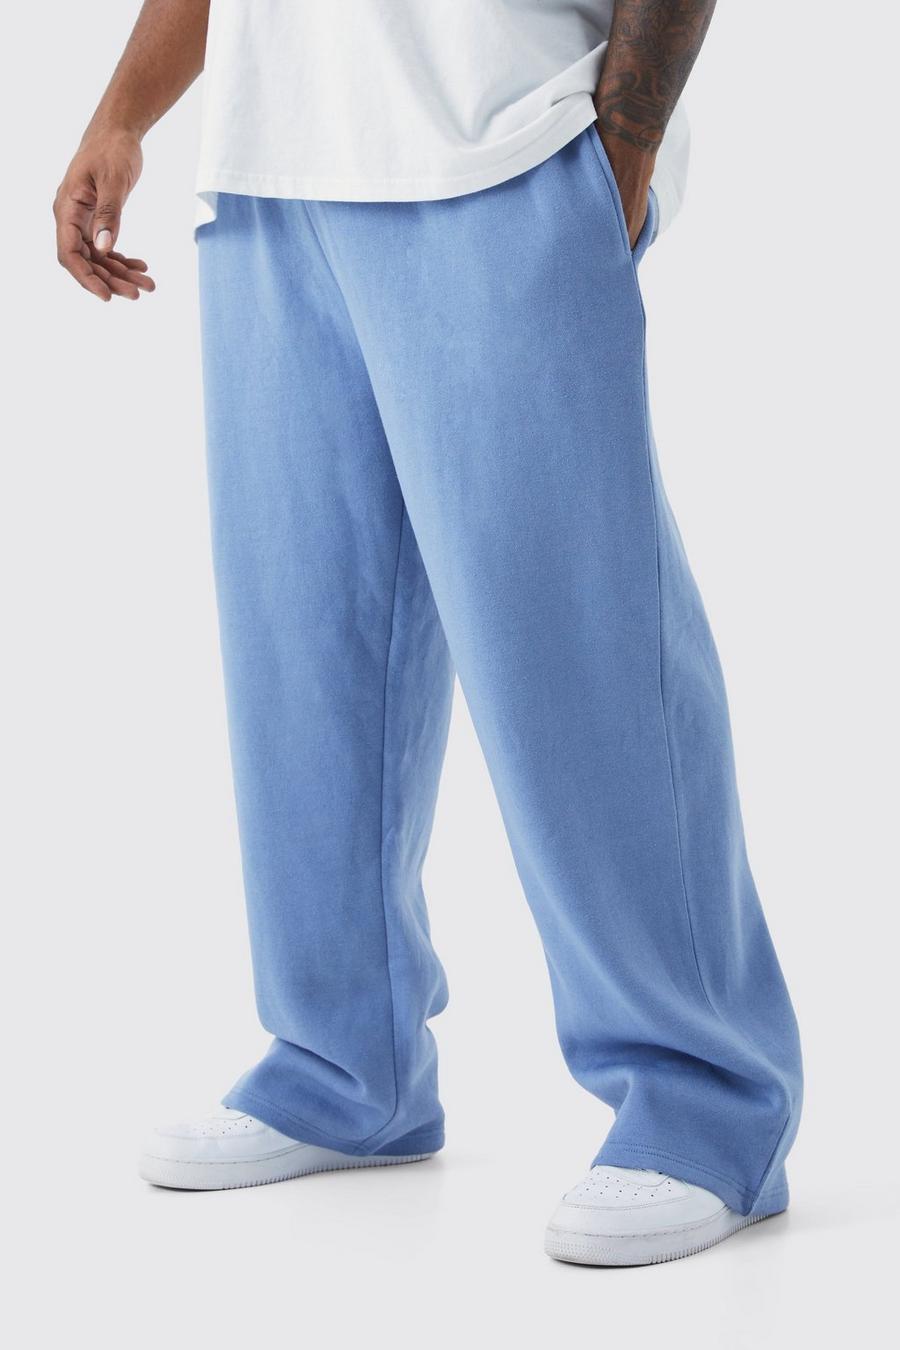 Pantaloni tuta Plus Size rilassati, Dusty blue